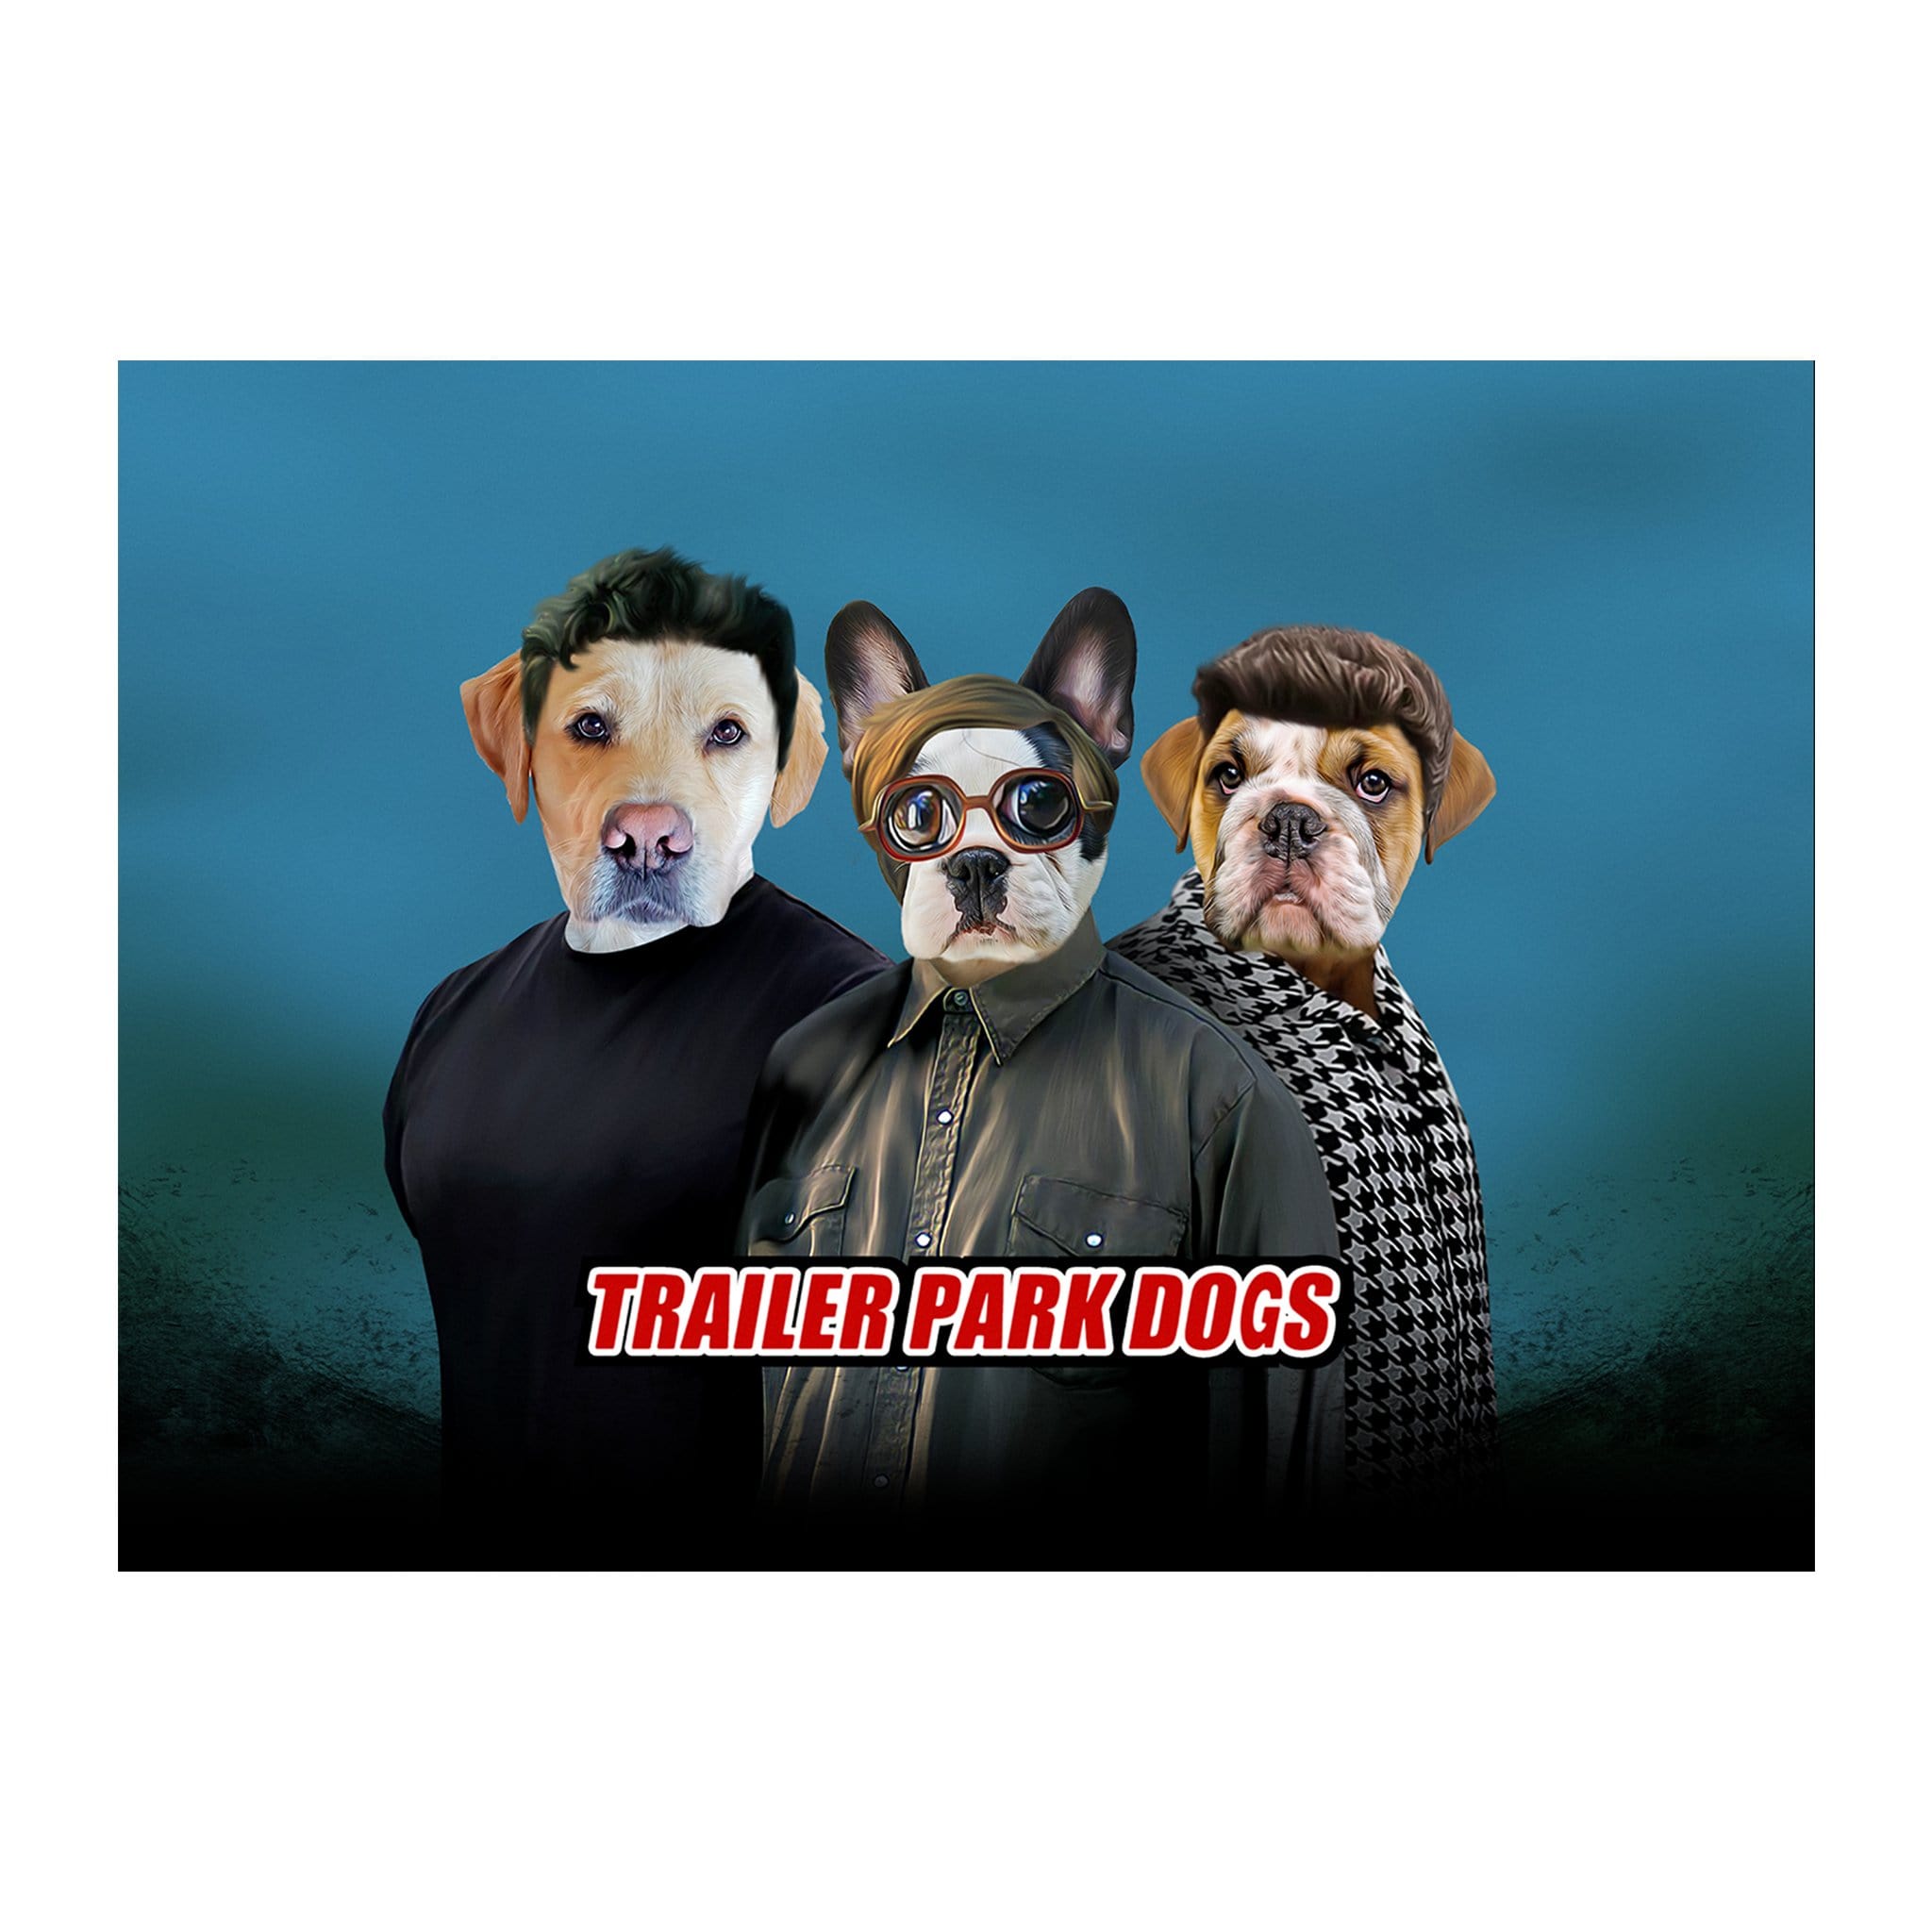 &#39;Trailer Park Dogs&#39; 3 Pet Digital Portrait